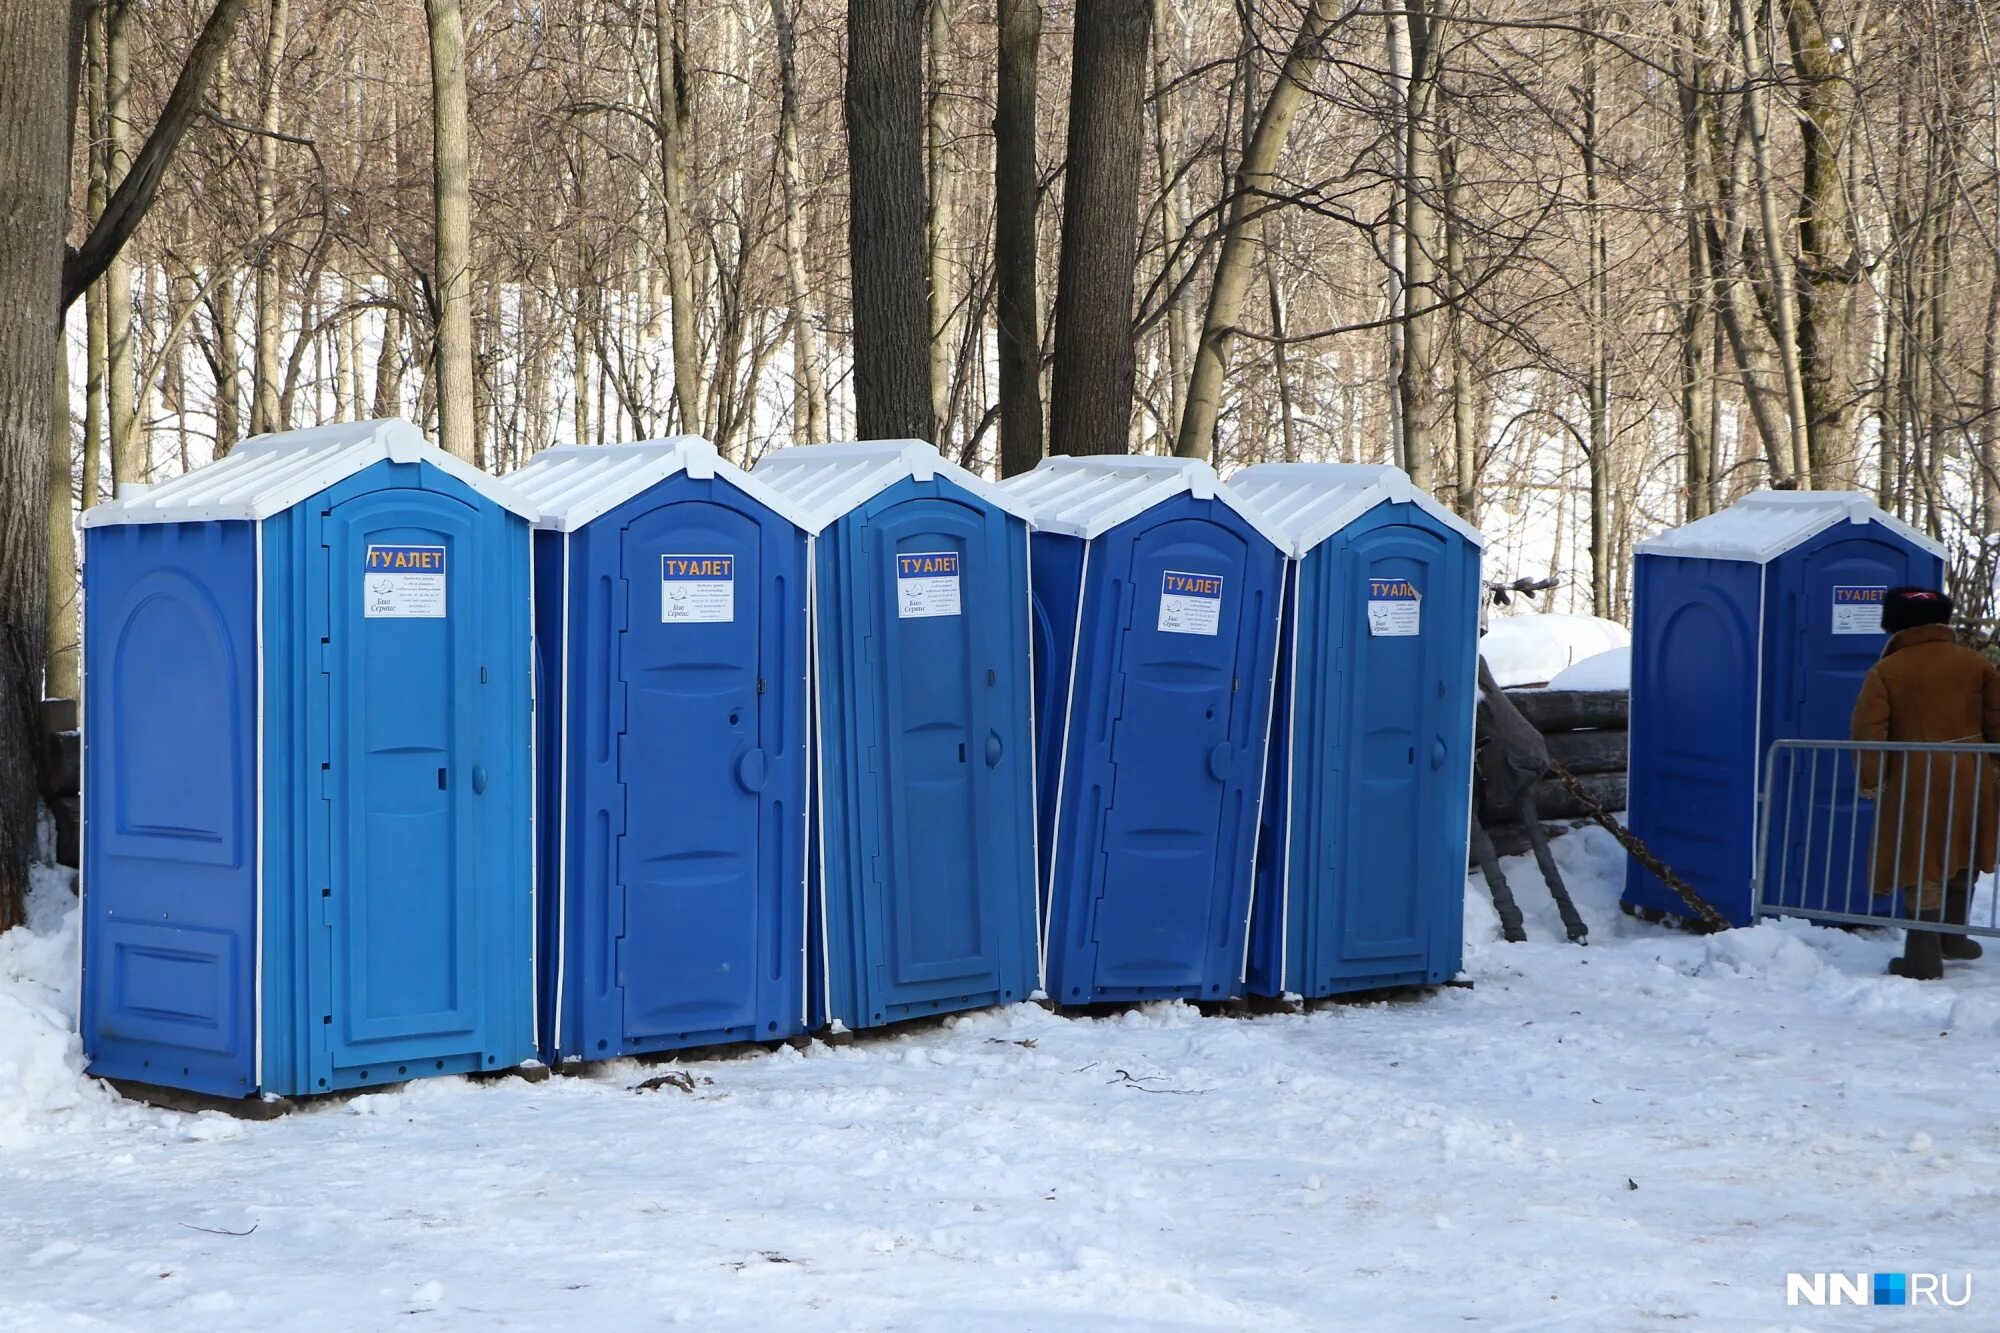 Купить туалетную в нижнем новгороде. Уличный туалет. Уличные туалетные кабинки. Мобильный туалет. Уличный туалет в России.